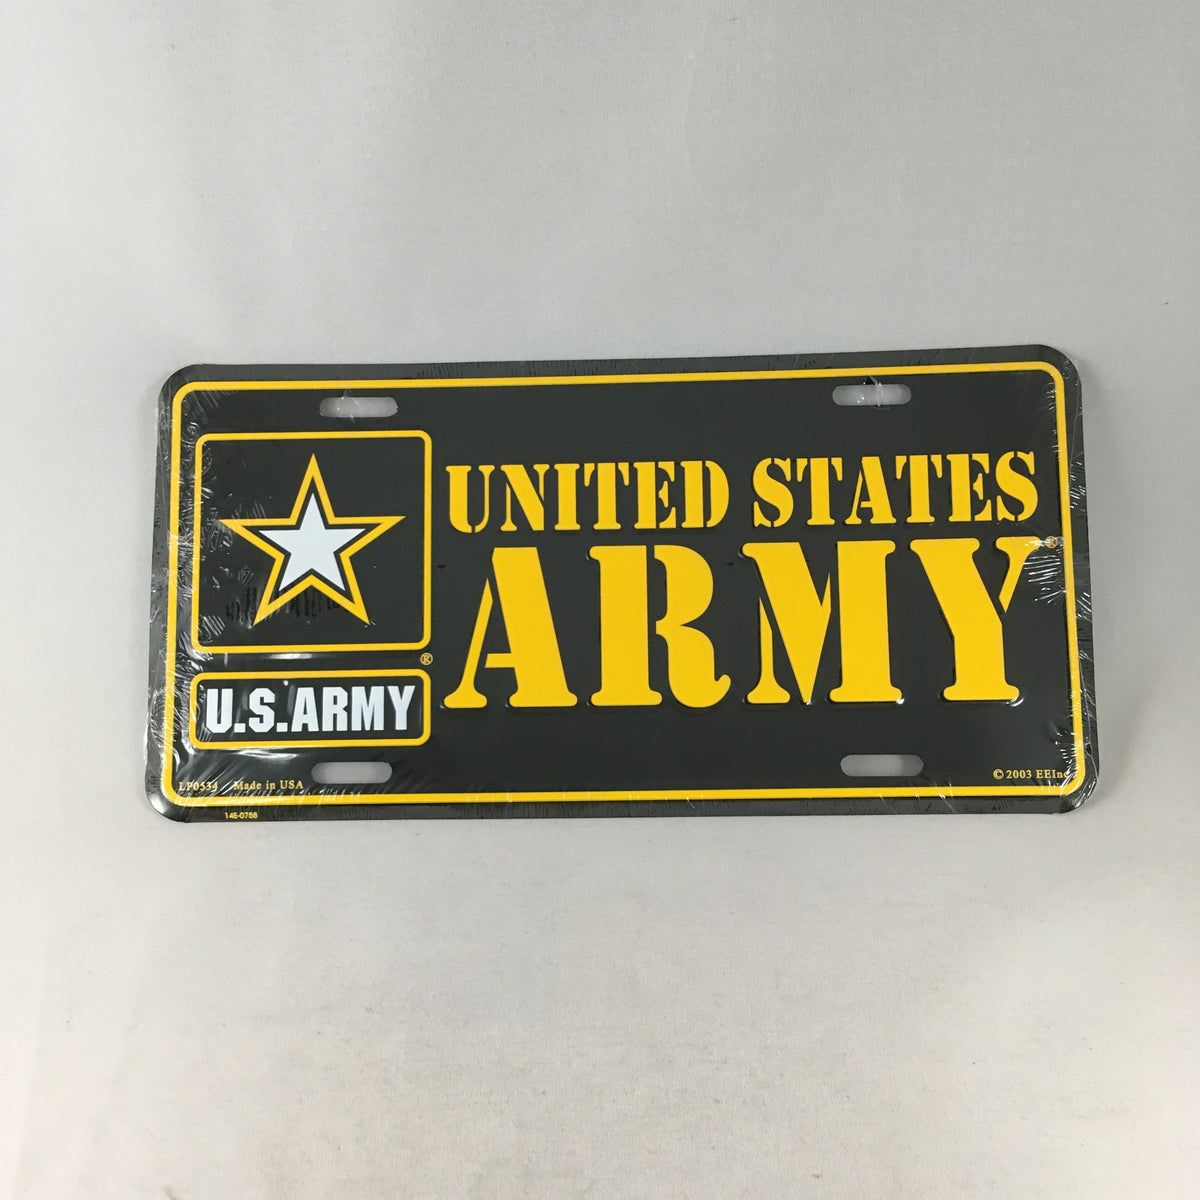 U.S. Army License Plate